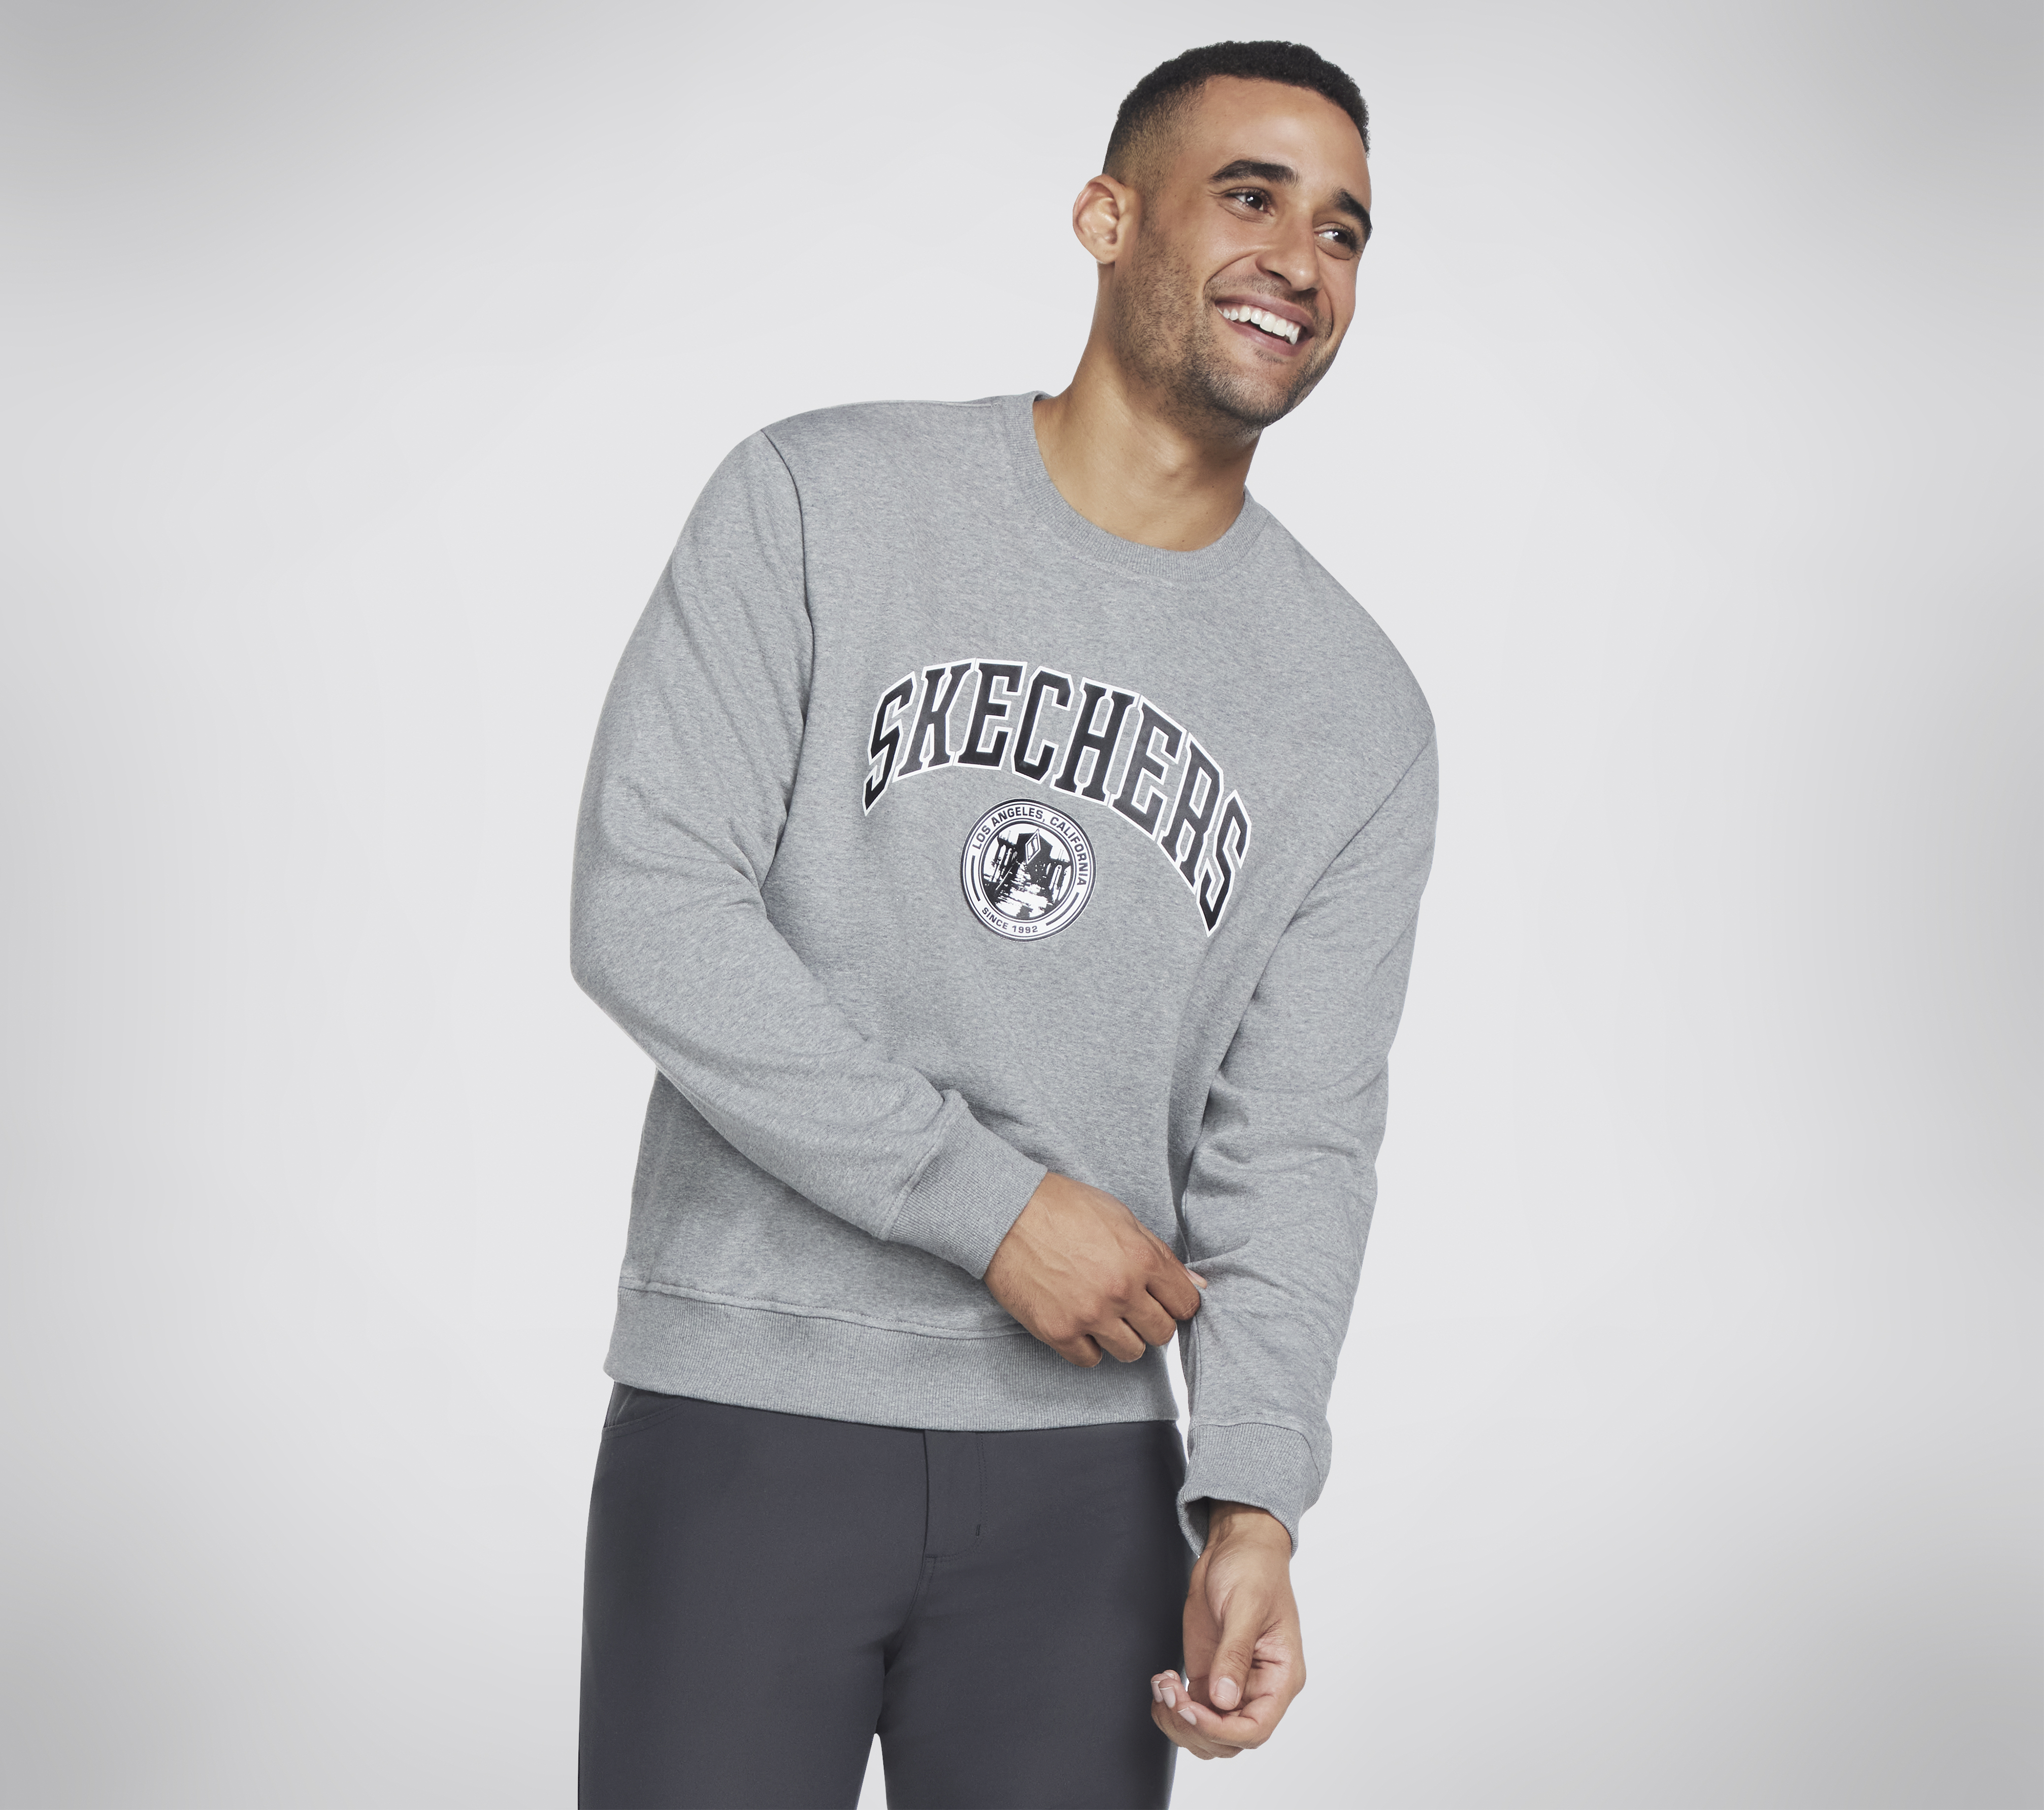 Skechers Skechers sweatshirt for men and women, casual sports tops